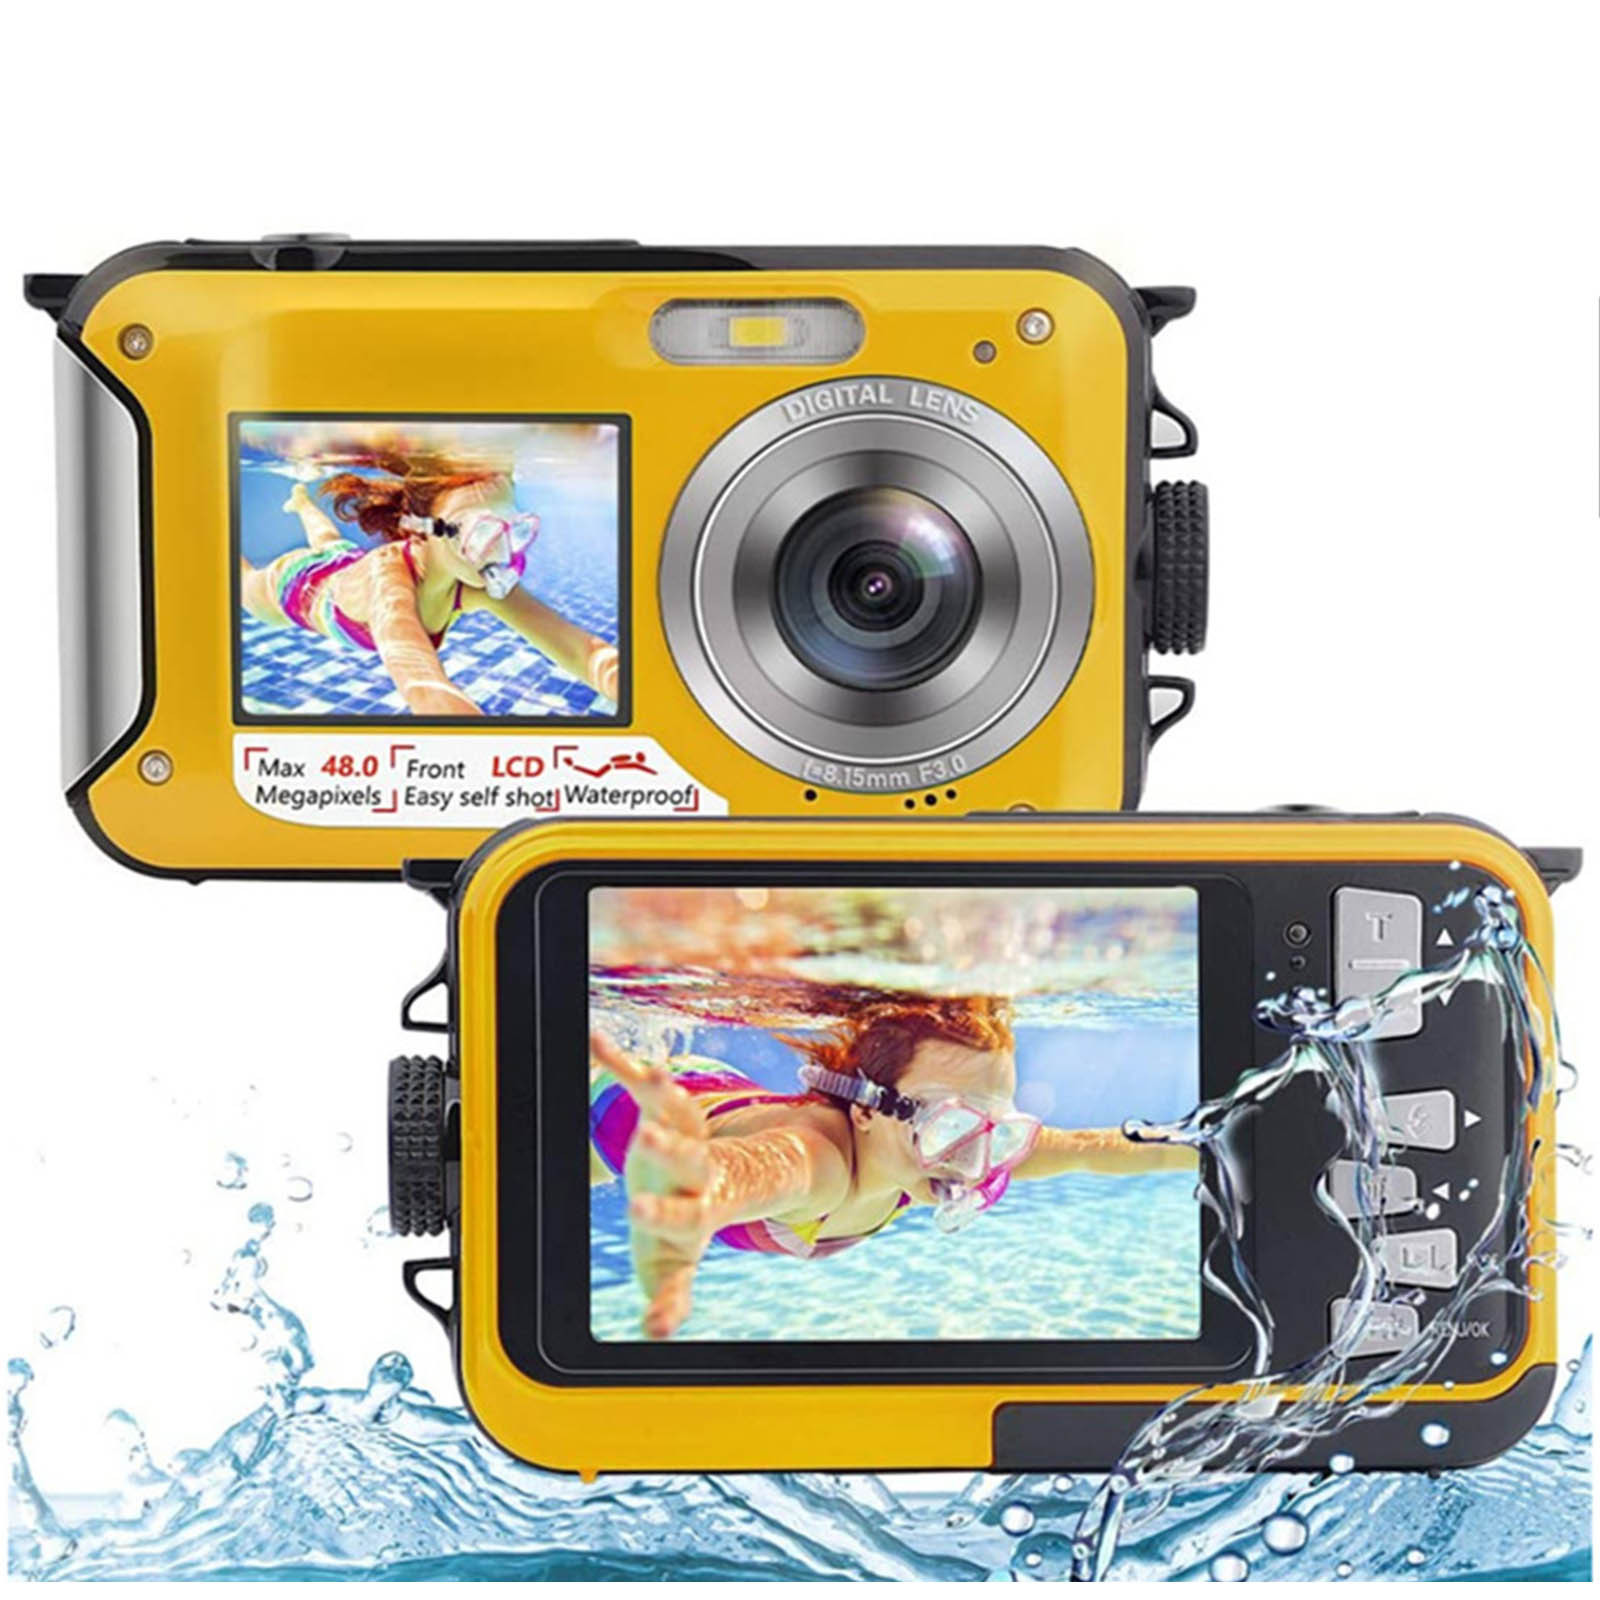 Feltree Electronics Accessories Waterproof Camera Underwater Cameras For Snorkeling Full HD 2.7K 48MP Video Recorder Selfie Dual Screens 10FT 16X Digital Zoom Waterproof Digital Camera - image 1 of 6